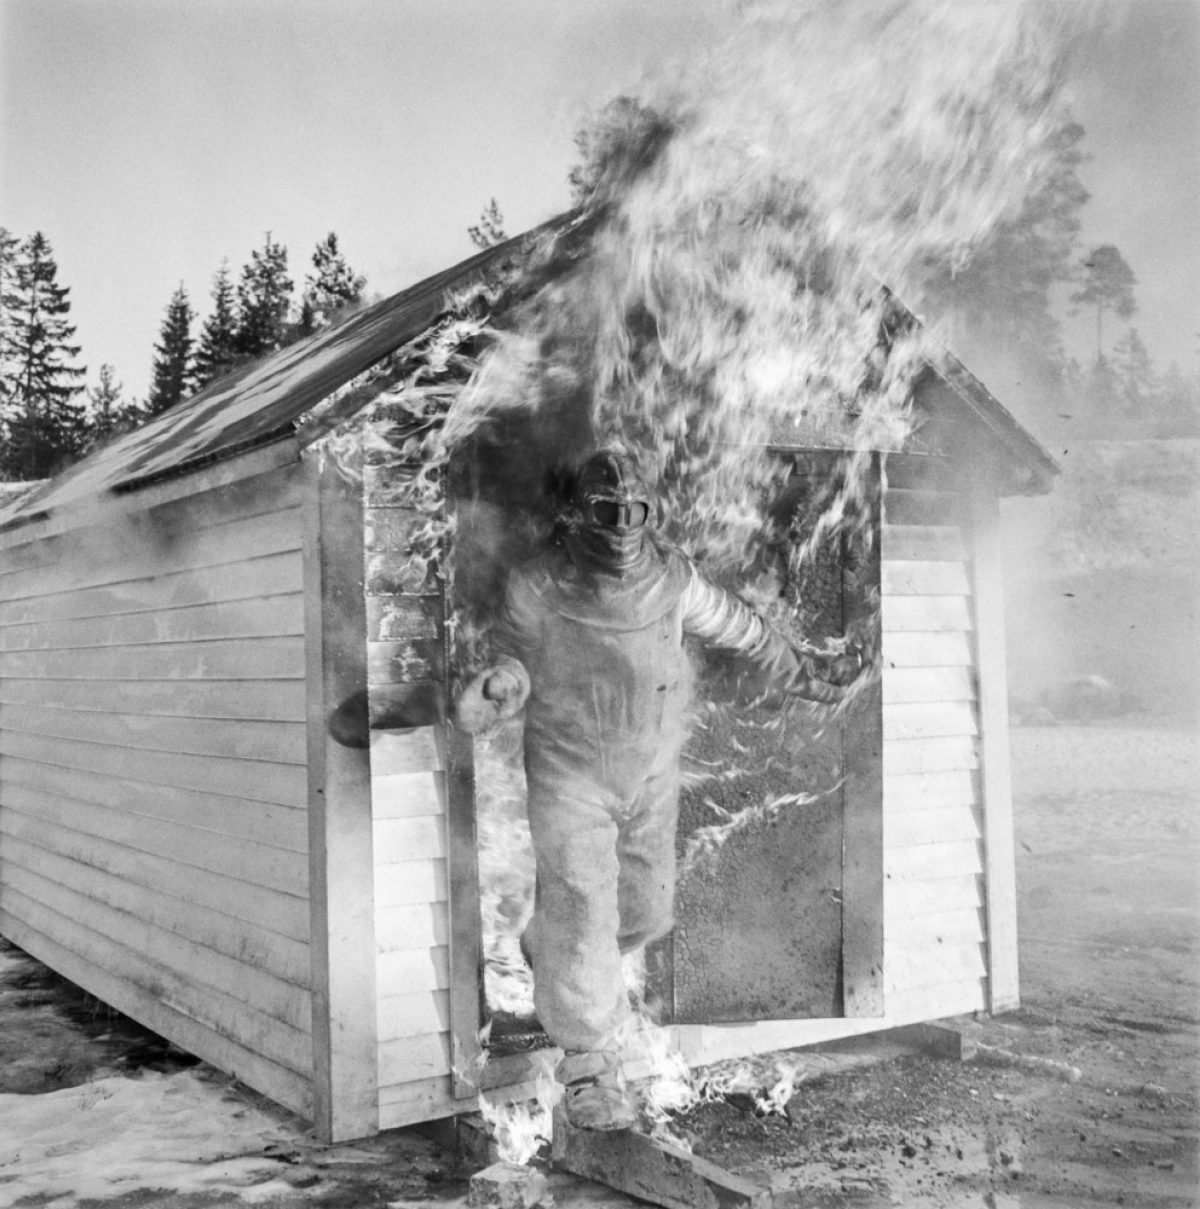 Matti Jämsä kokeili Suomen Mineraali Oy:n asbestipuvun käyttöä vuonna 1957. Hän viivytteli liekkien keskellä niin kauan, että avustajat pelkäsivät pahinta. Kuva: UA Saarinen / JOKA / Museovirasto